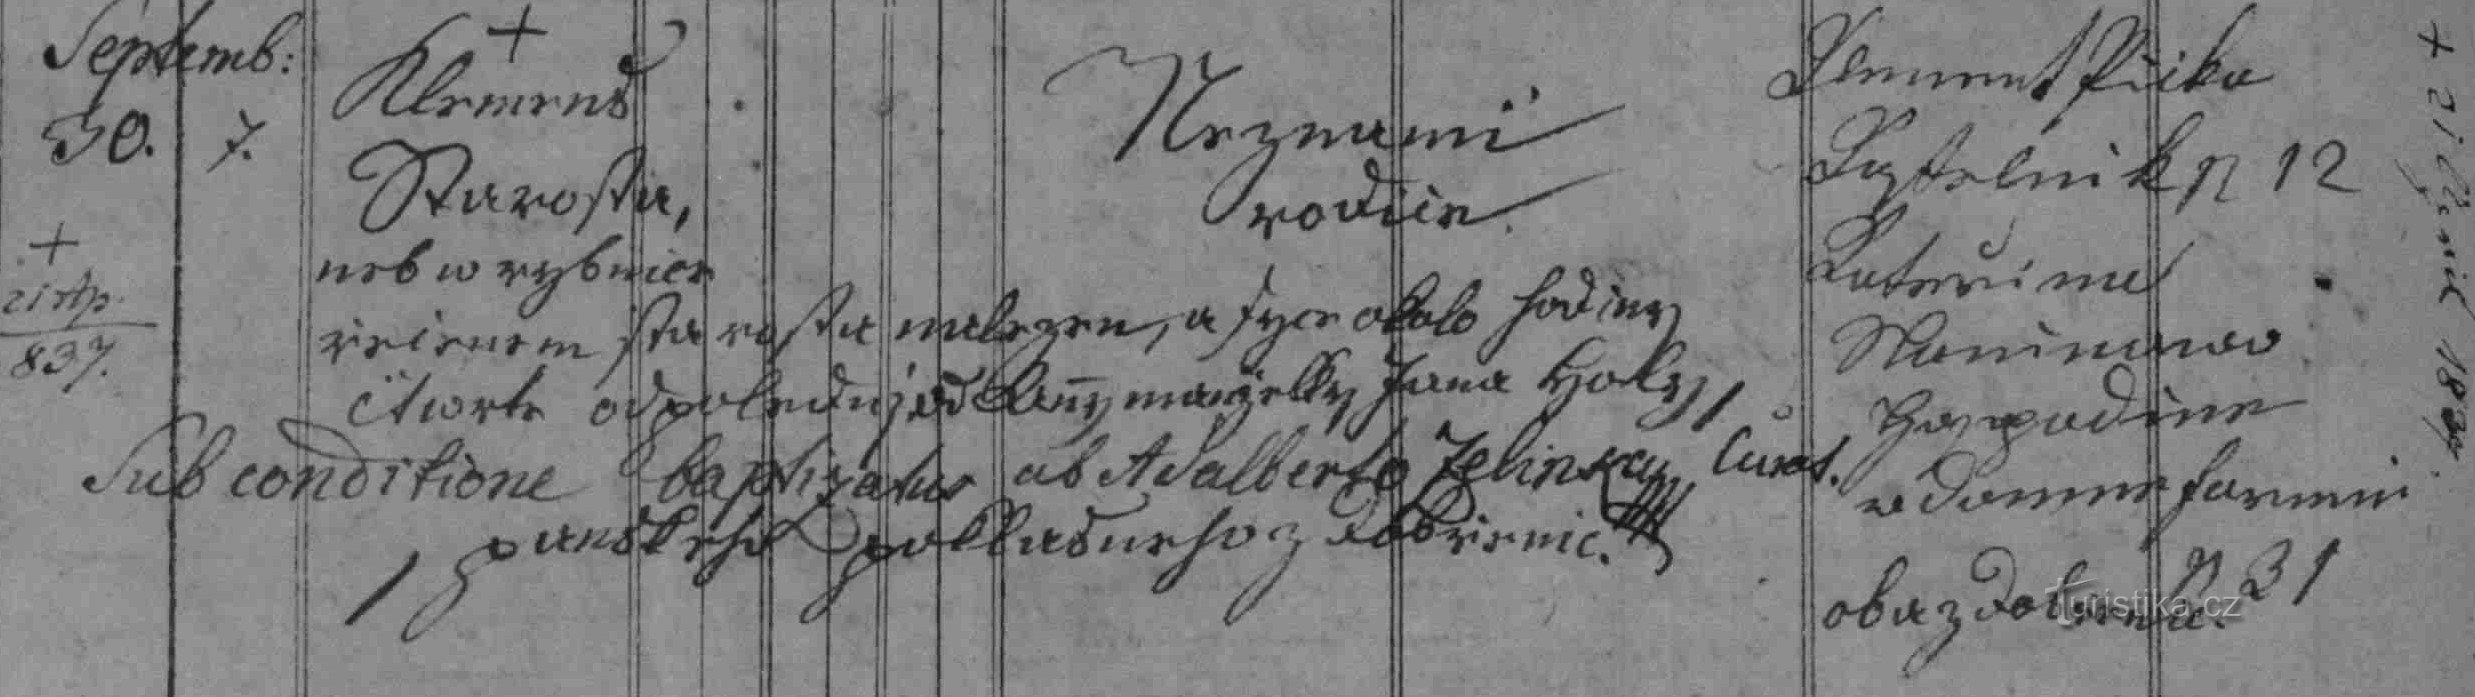 Registro de registro Dobrení do batismo de Klemens Starosta de 1836